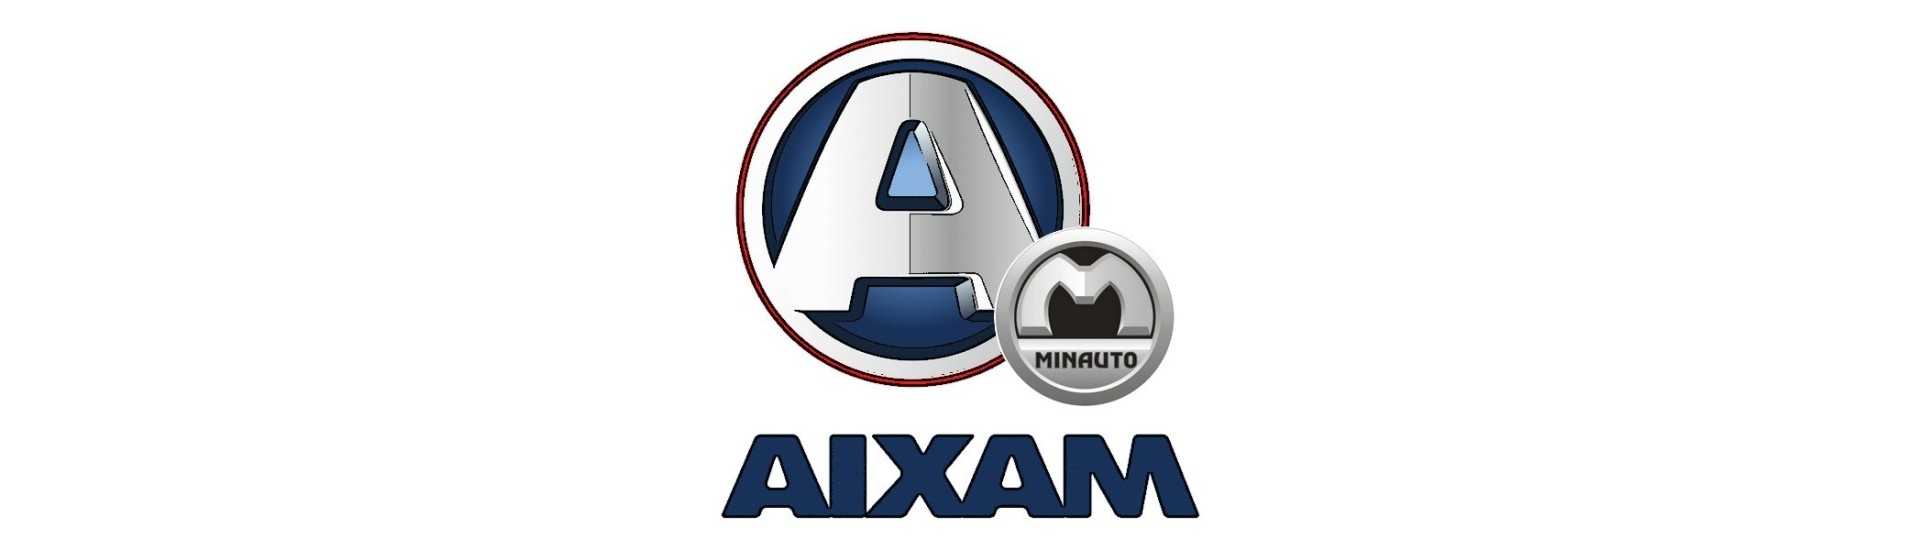 Rezervarea la cel mai bun preț pentru o mașină fără permis Aixam Minauto